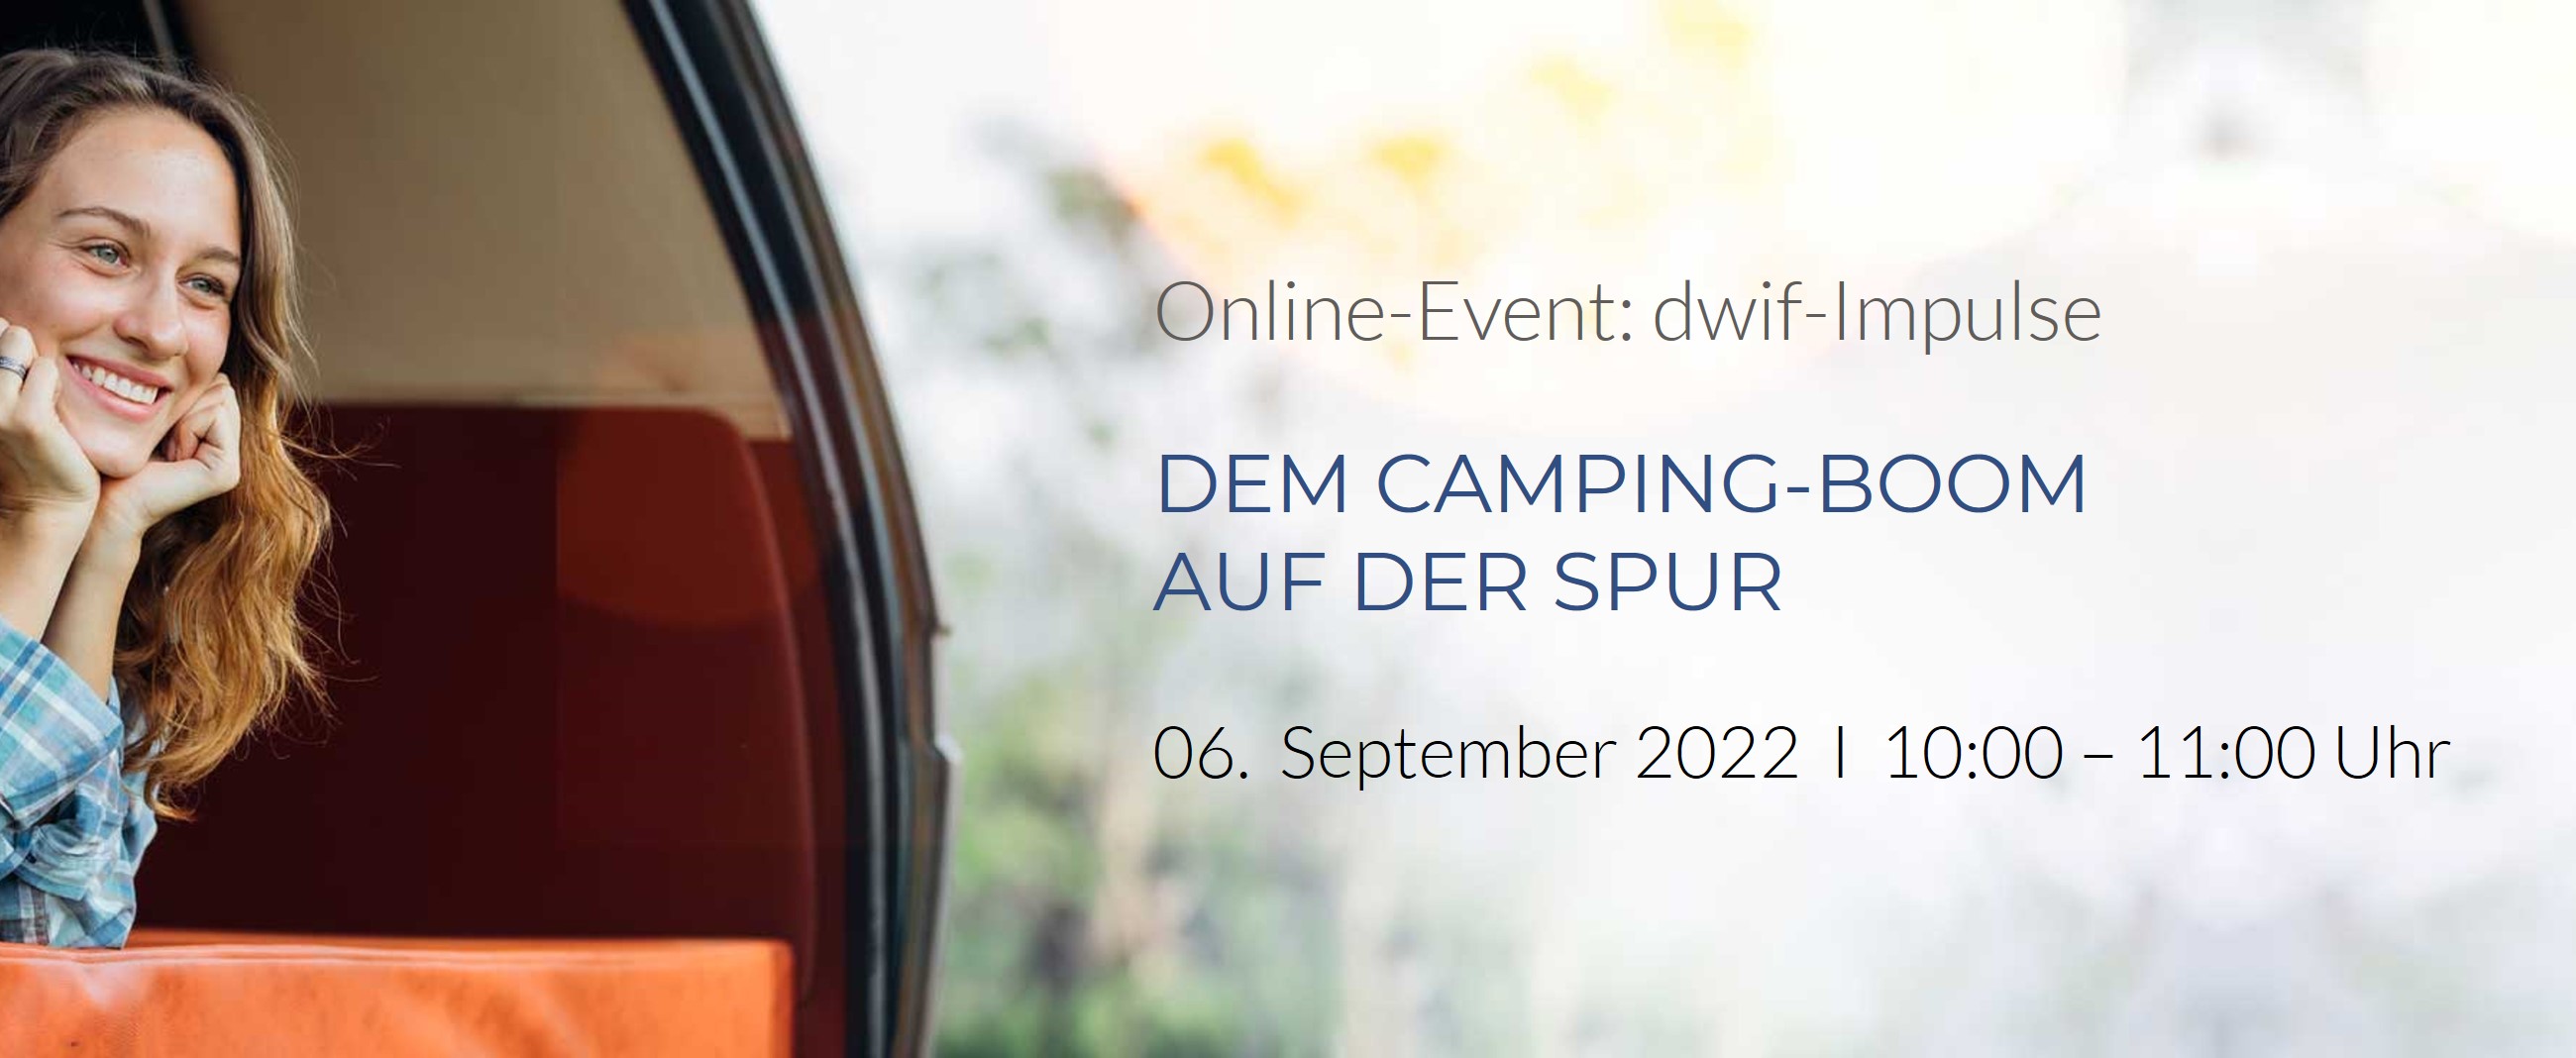 dwif Impulse Camping-Boom